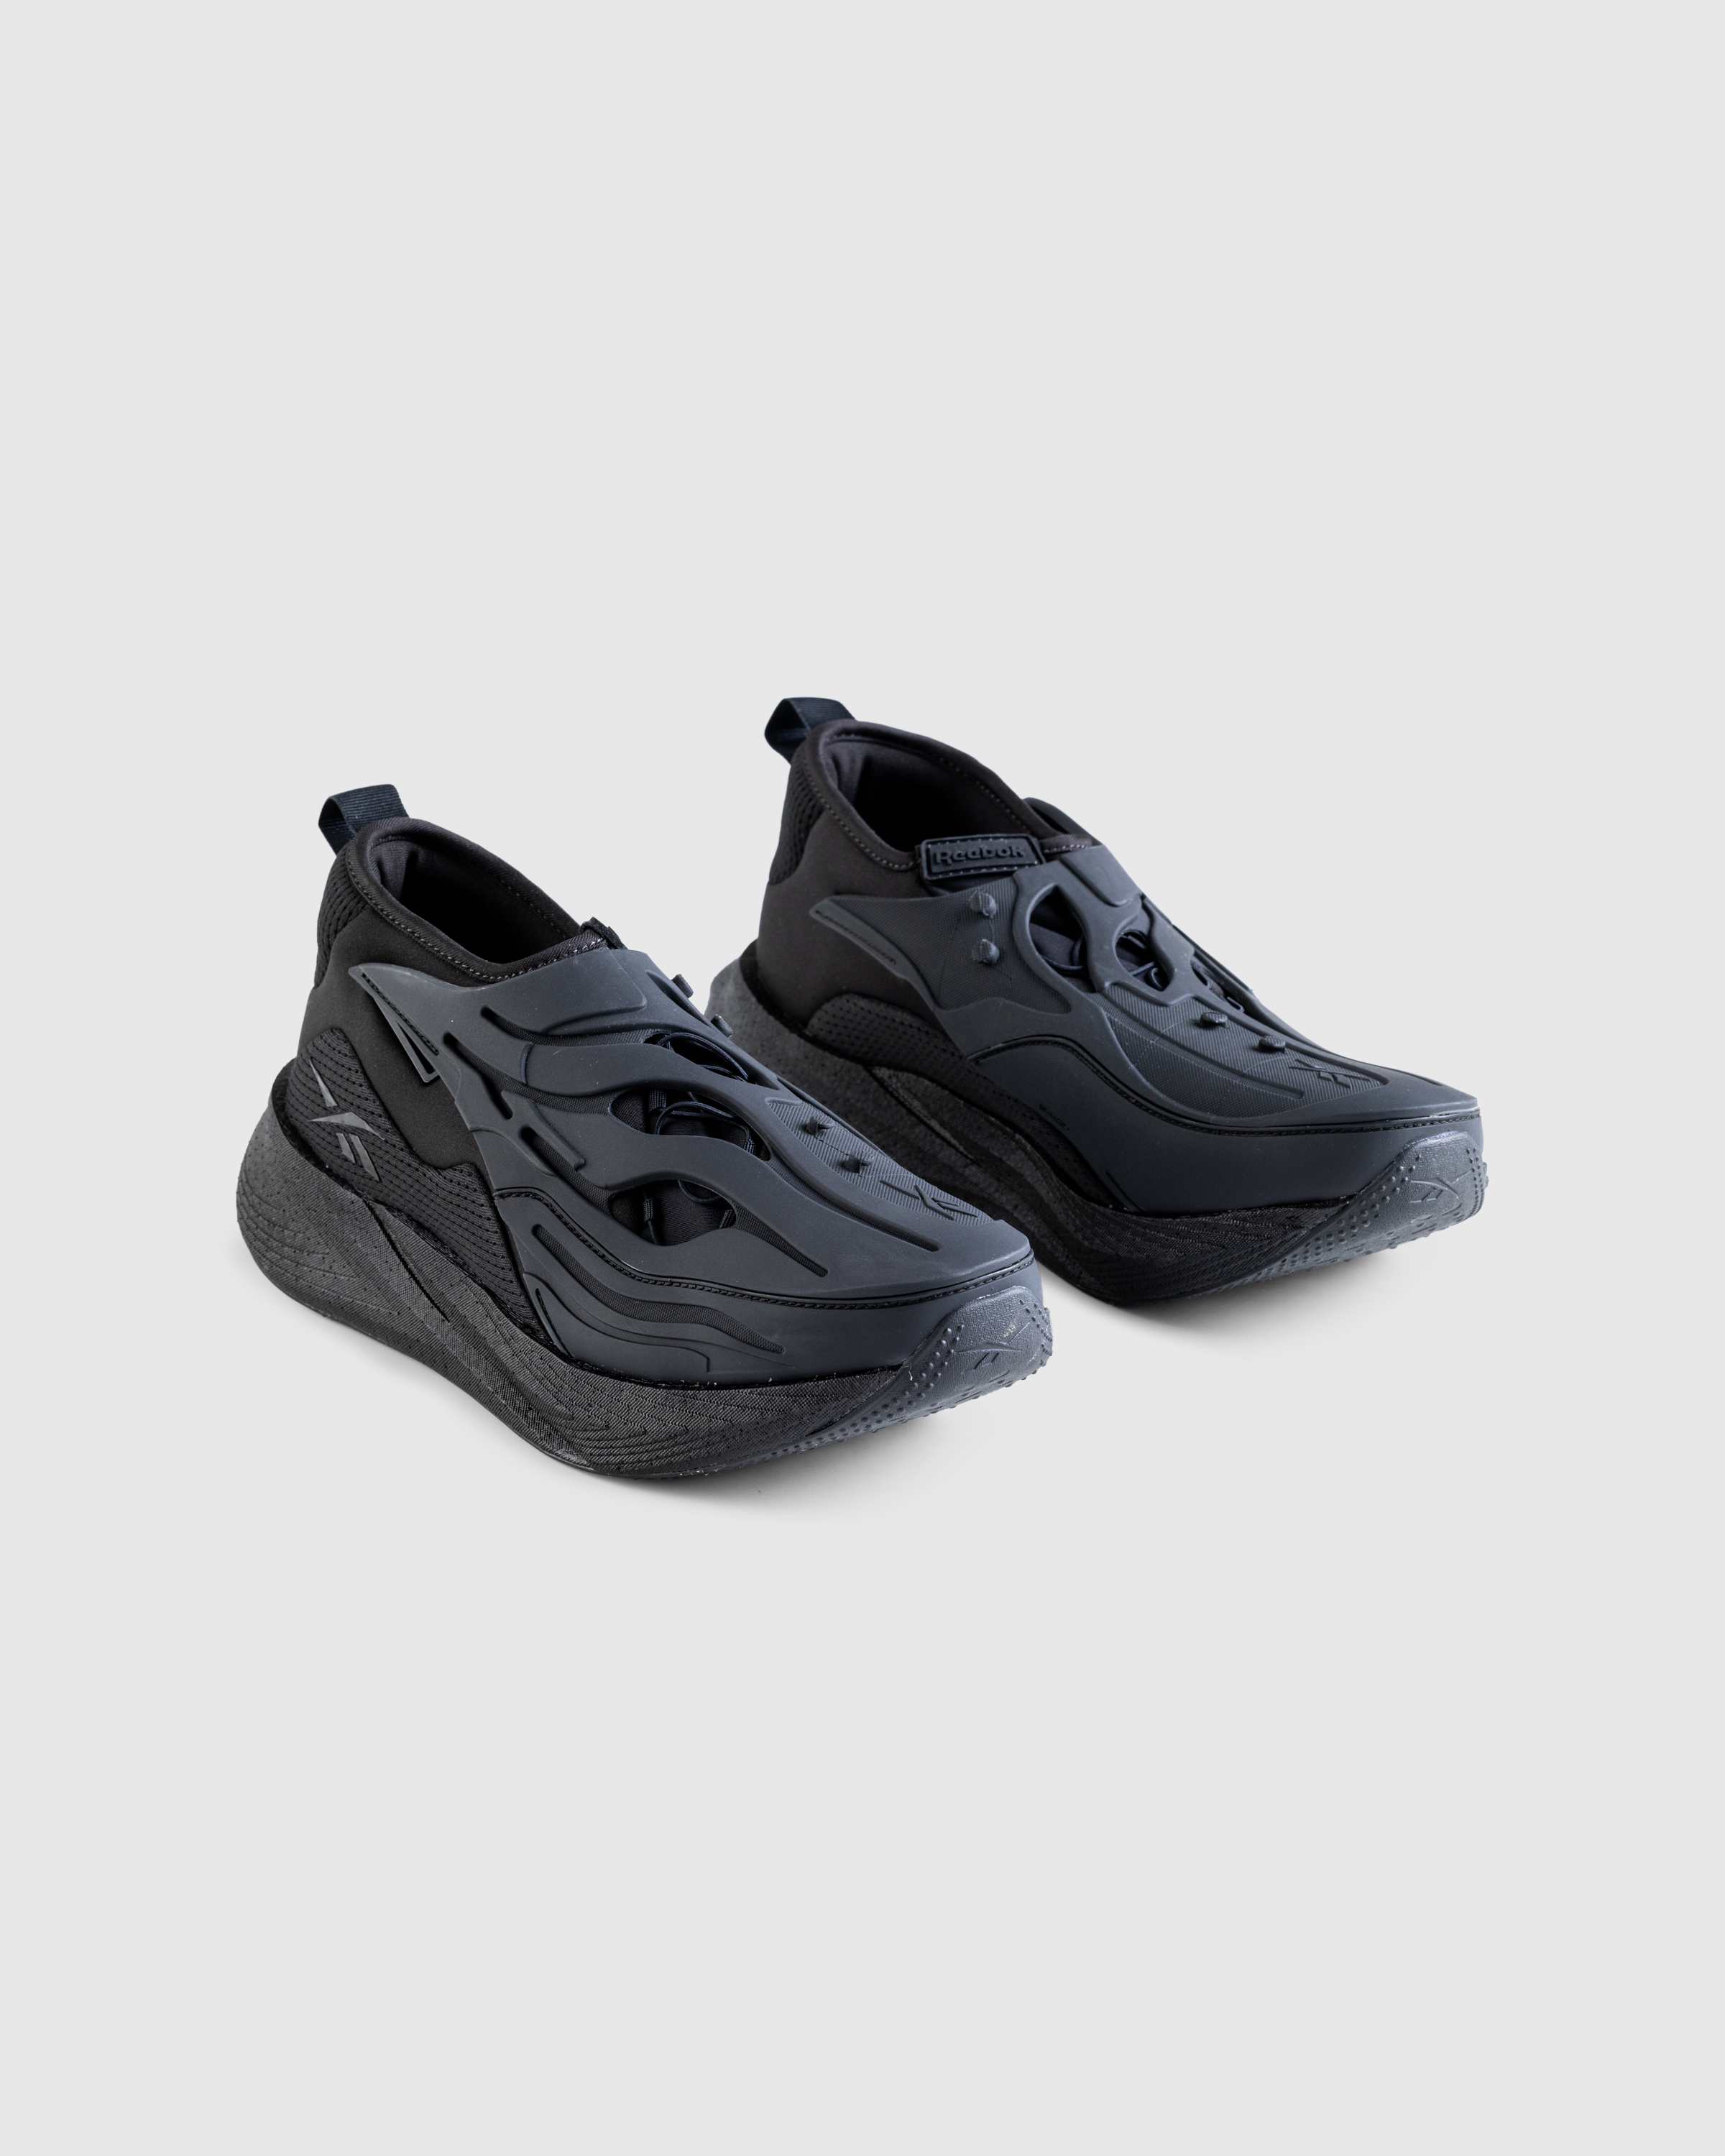 Reebok – Floatride Energy Argus X Black - Sneakers - Black - Image 3